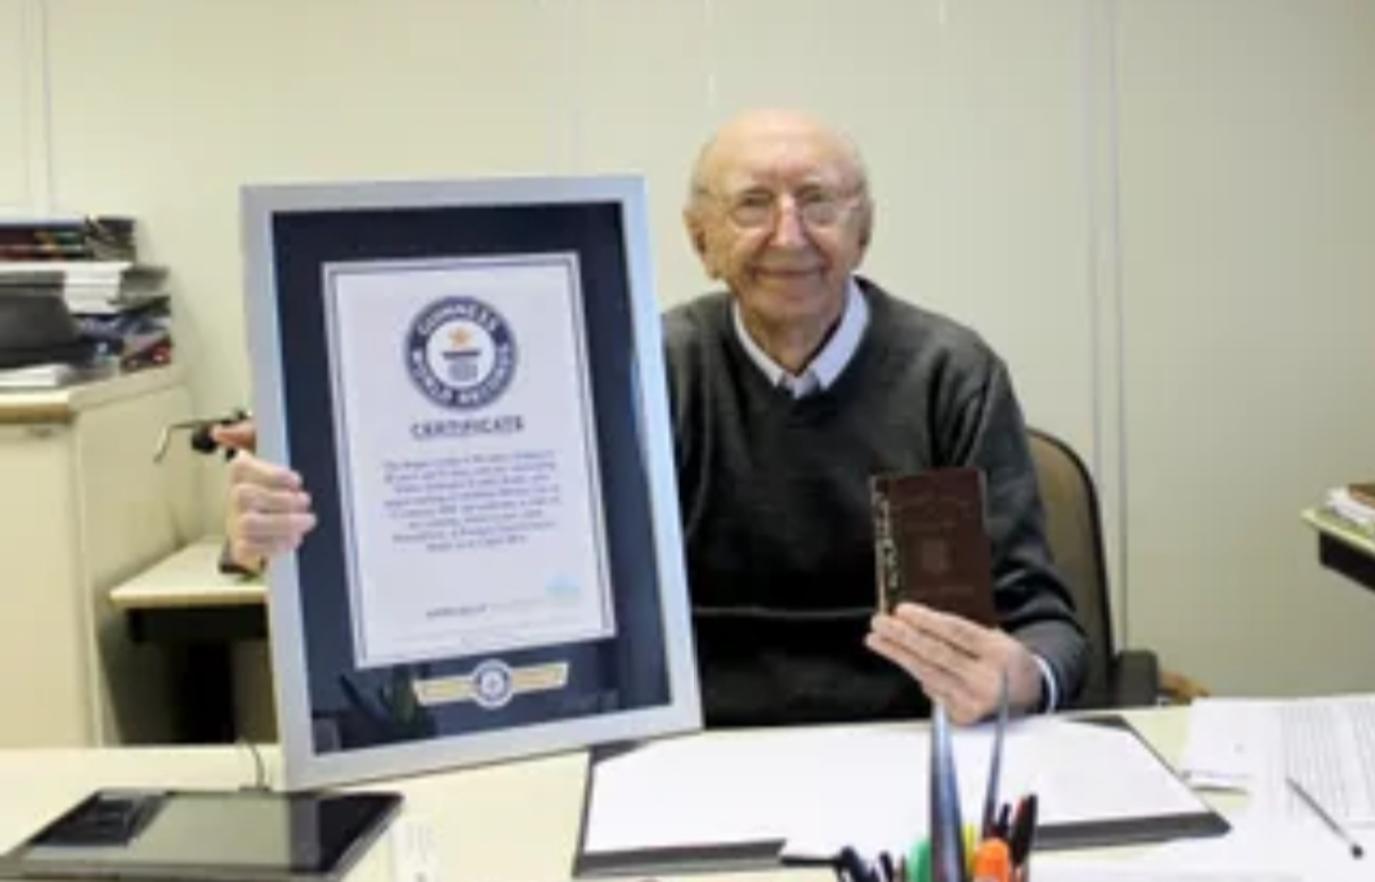 أقدم موظف في العالم يدخل غينيس لعمله مدة 84 عاما في نفس الشركة
